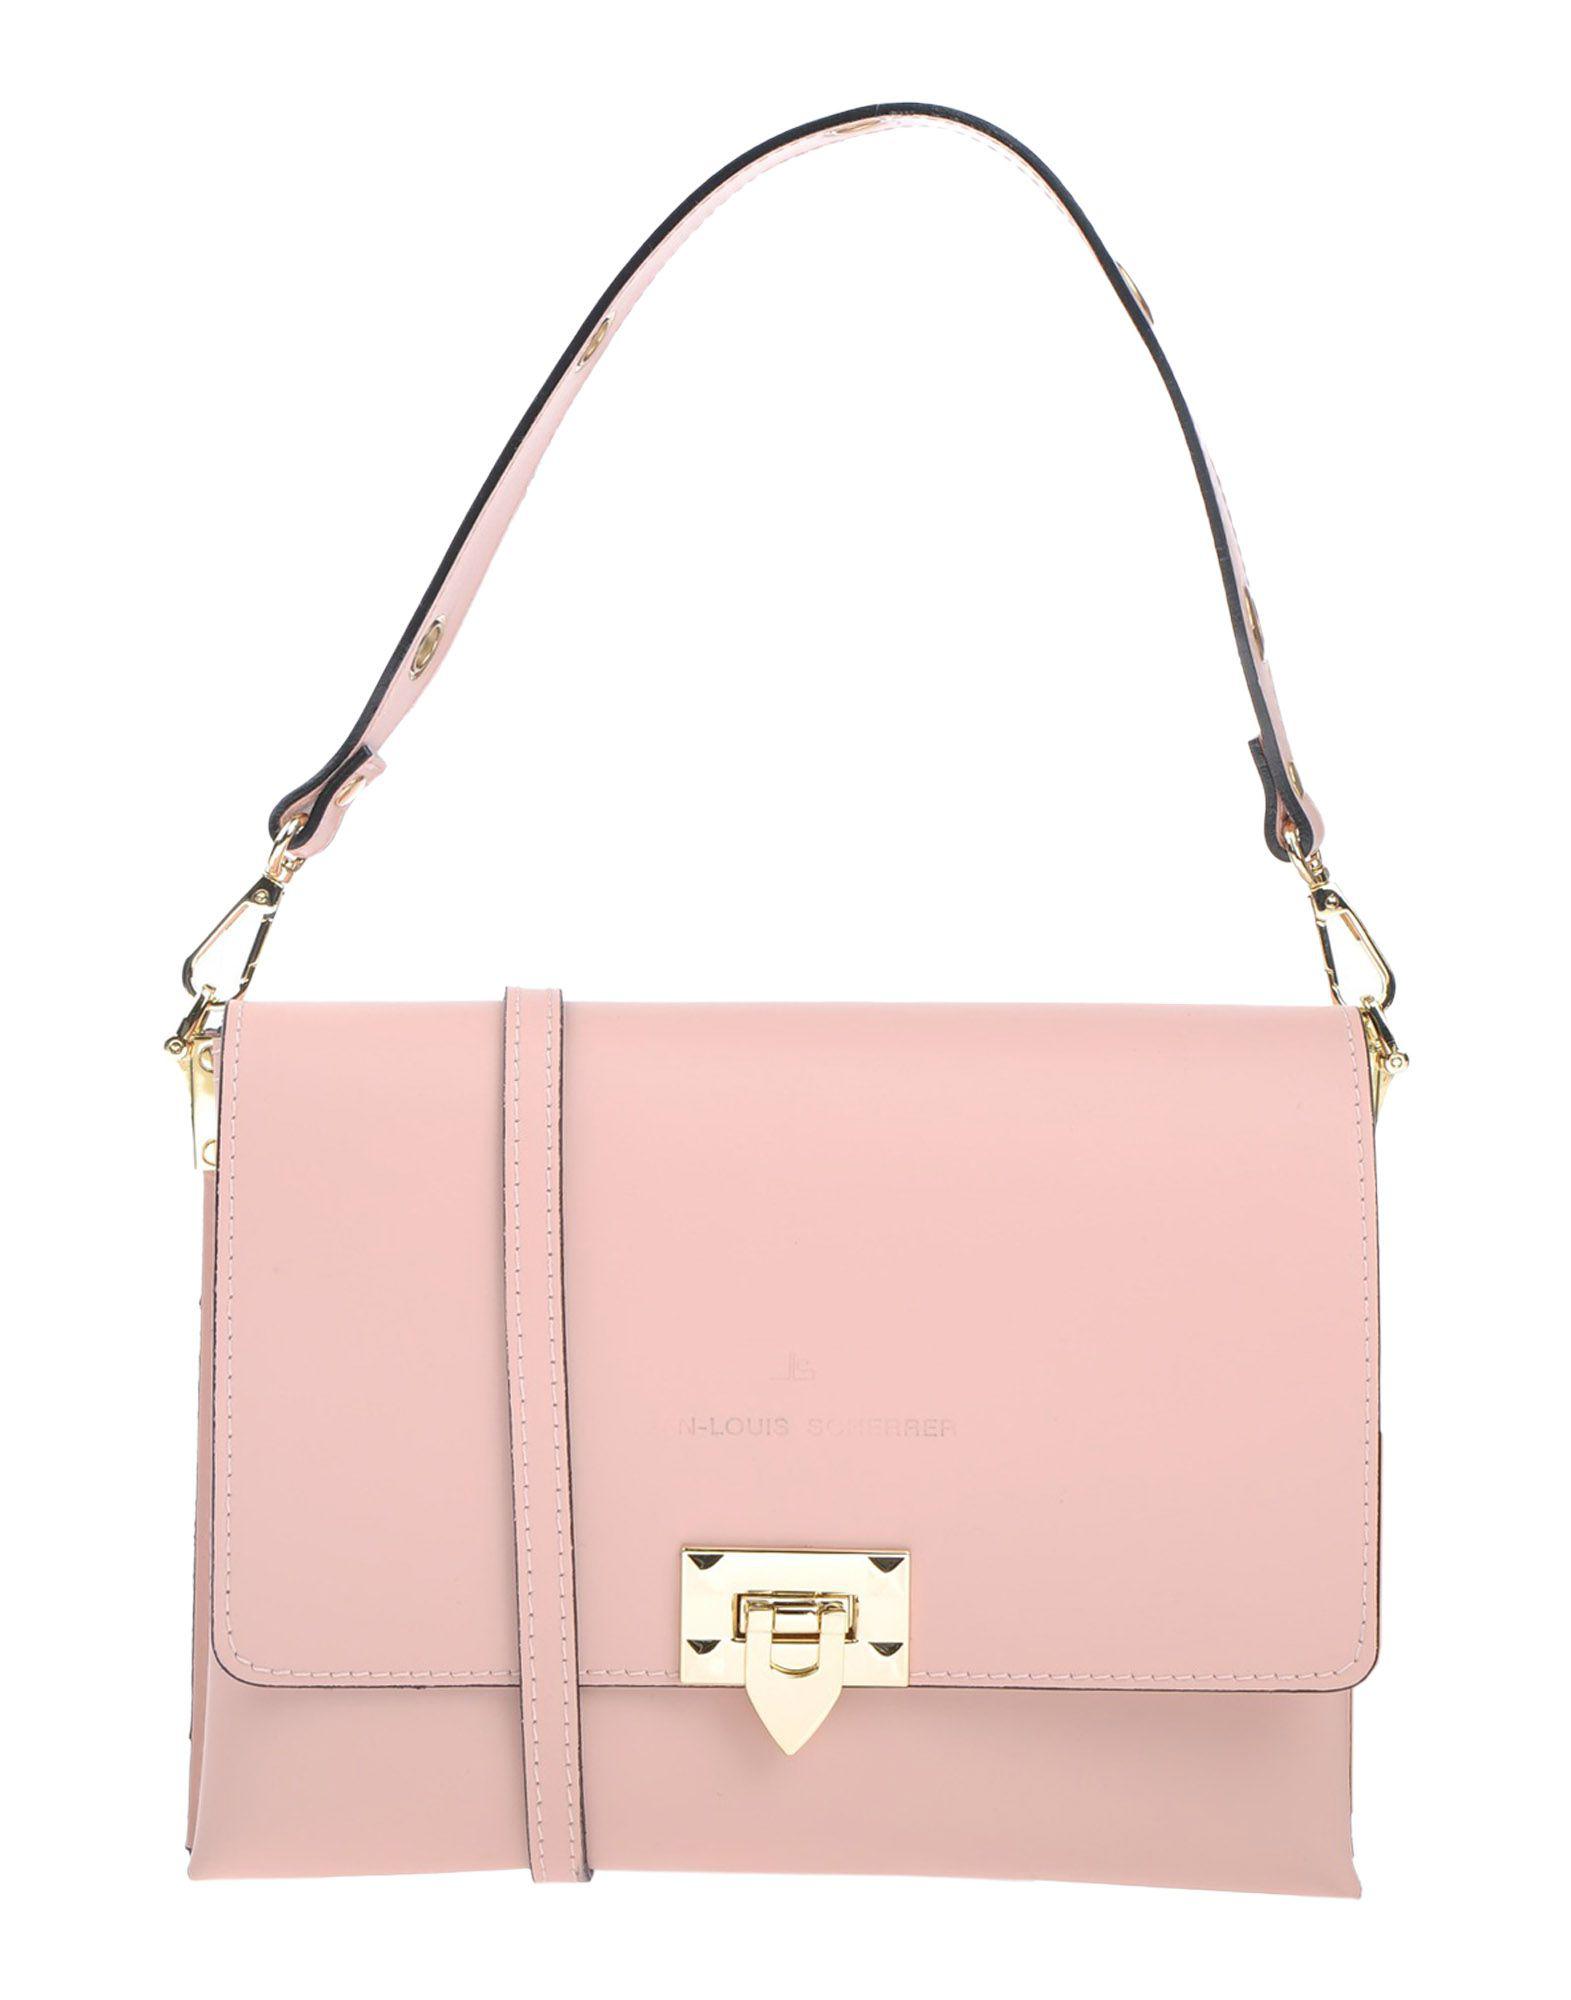 Lyst - Jean Louis Scherrer Handbag in Pink